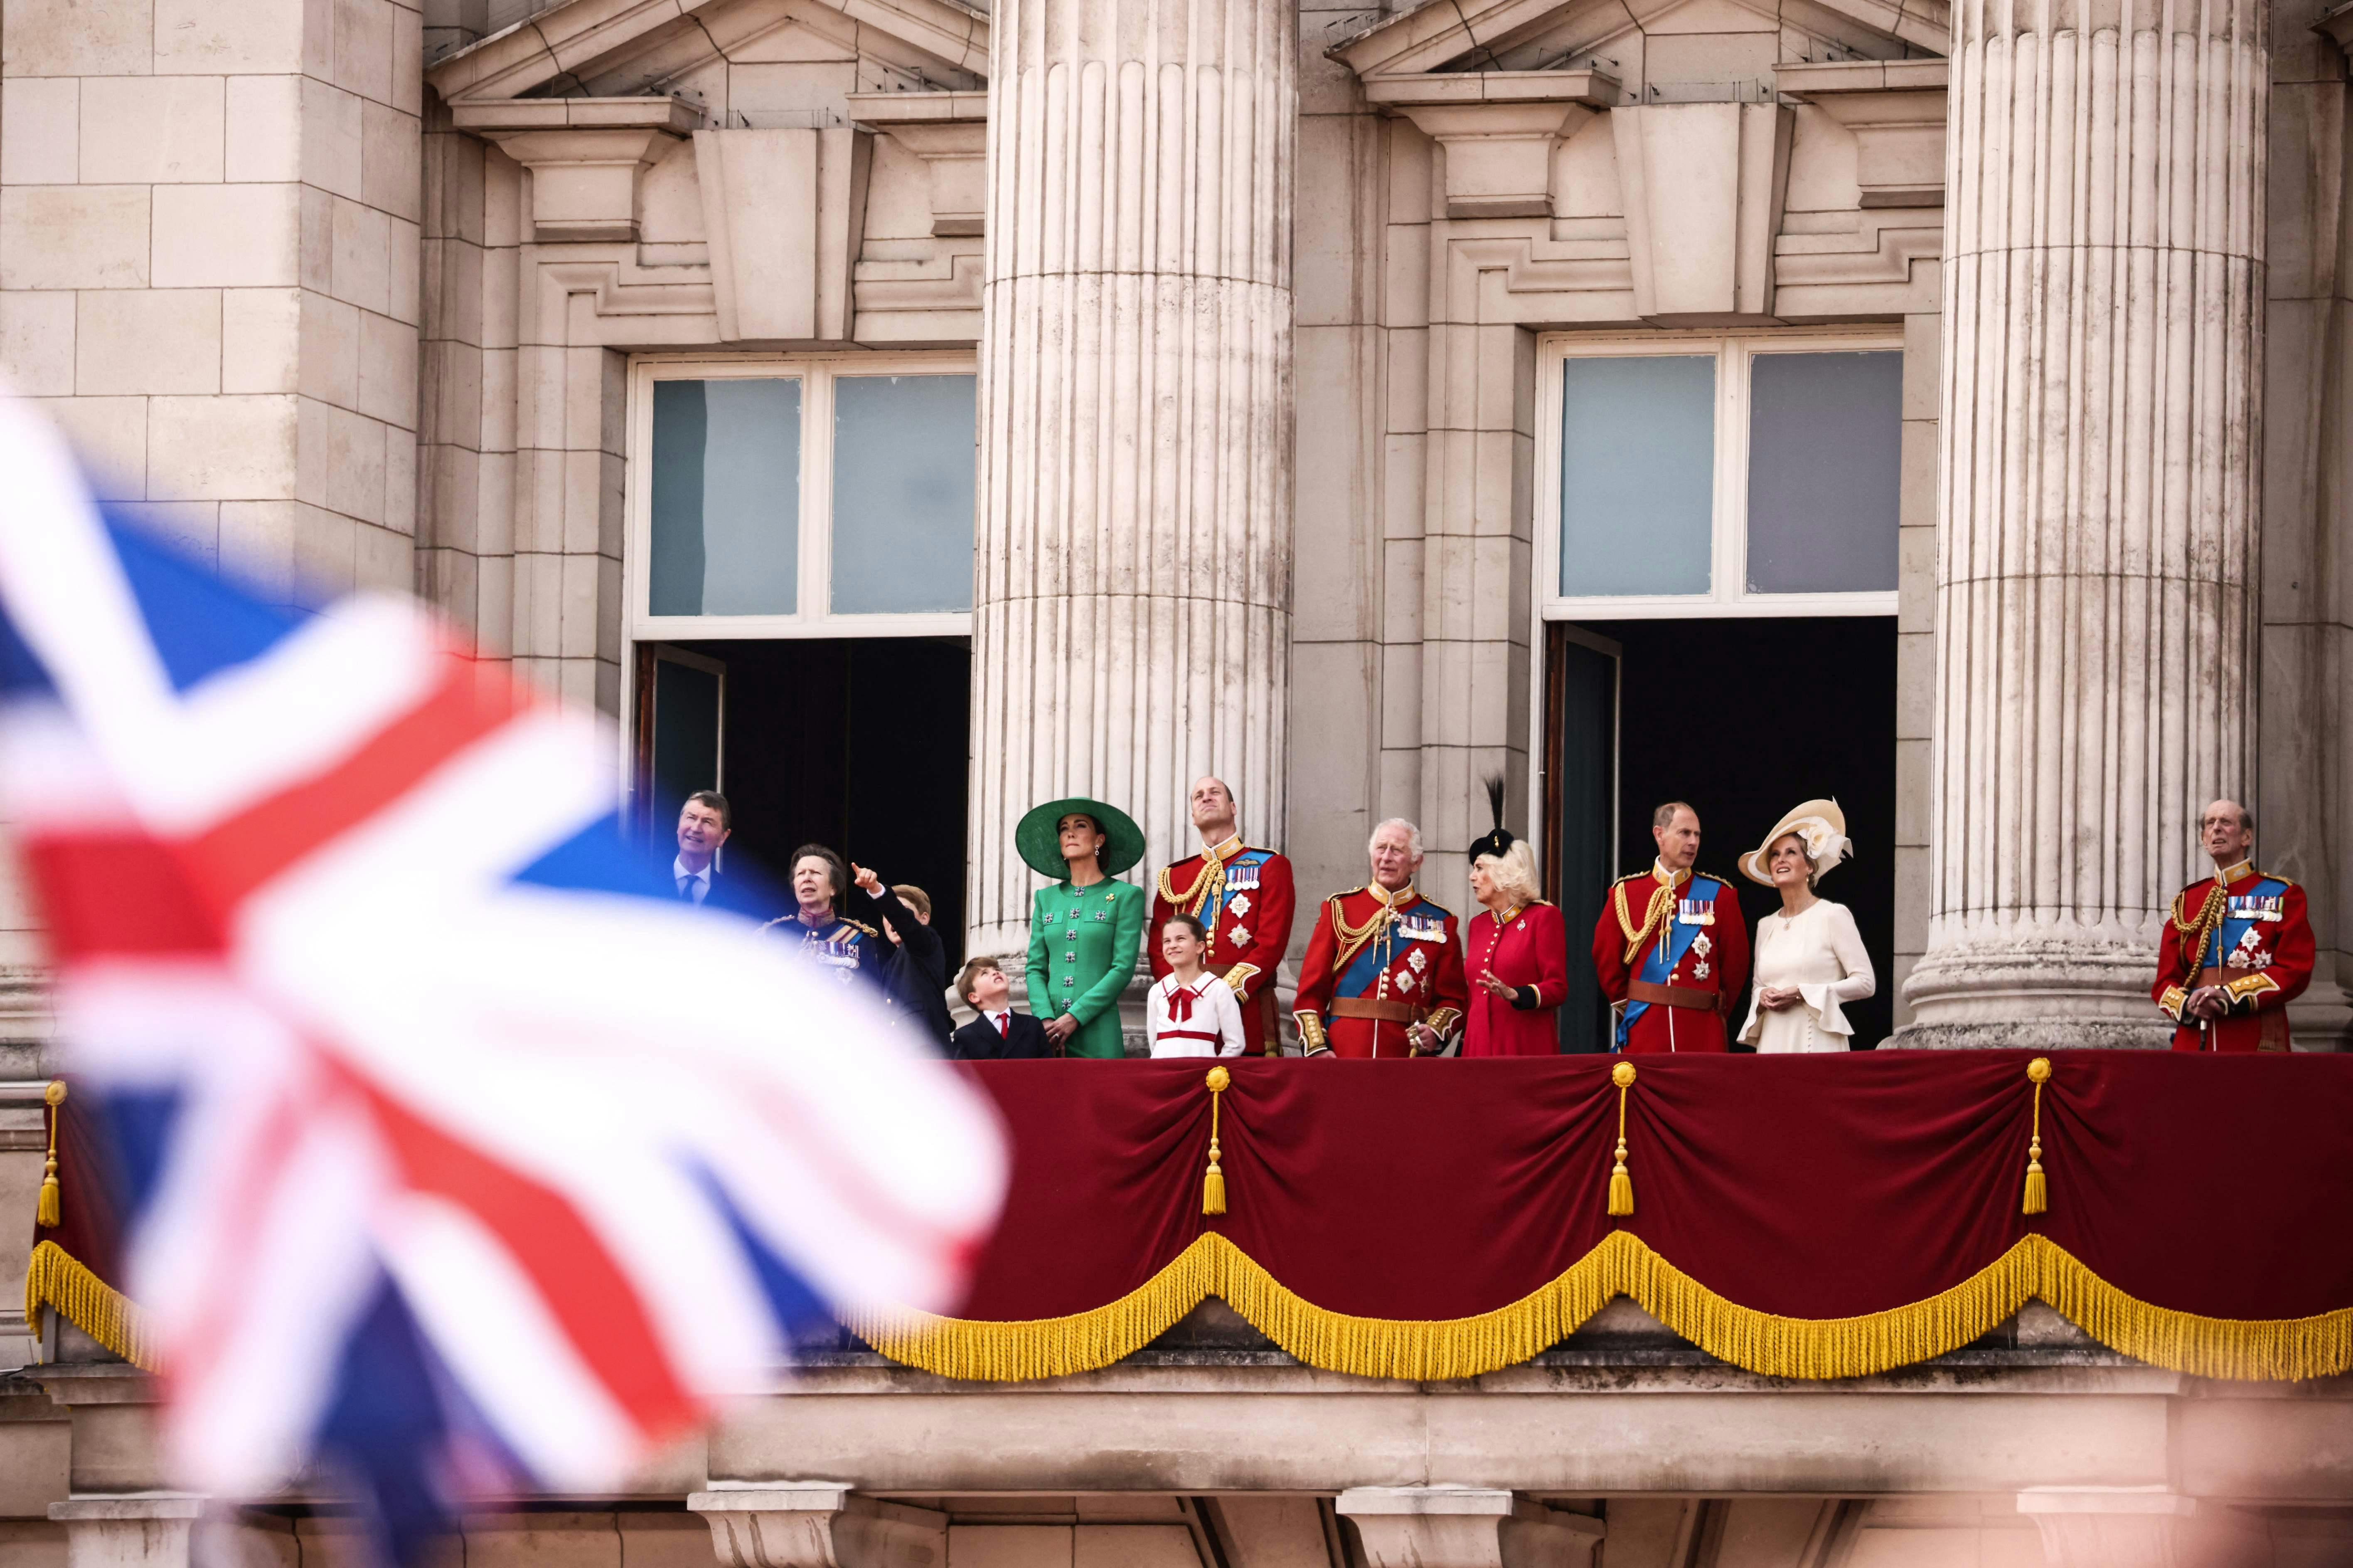 Fra venstre mod højre er det Timothy Laurence, der står med sin hustru prinsesse Anne, dernæst er det prins George, prins Louis, prinsesse Kate, prins William, prinsesse Charlotte, kong Charles, dronning Camilla, prins Edwards og hertuginde Sophie, der